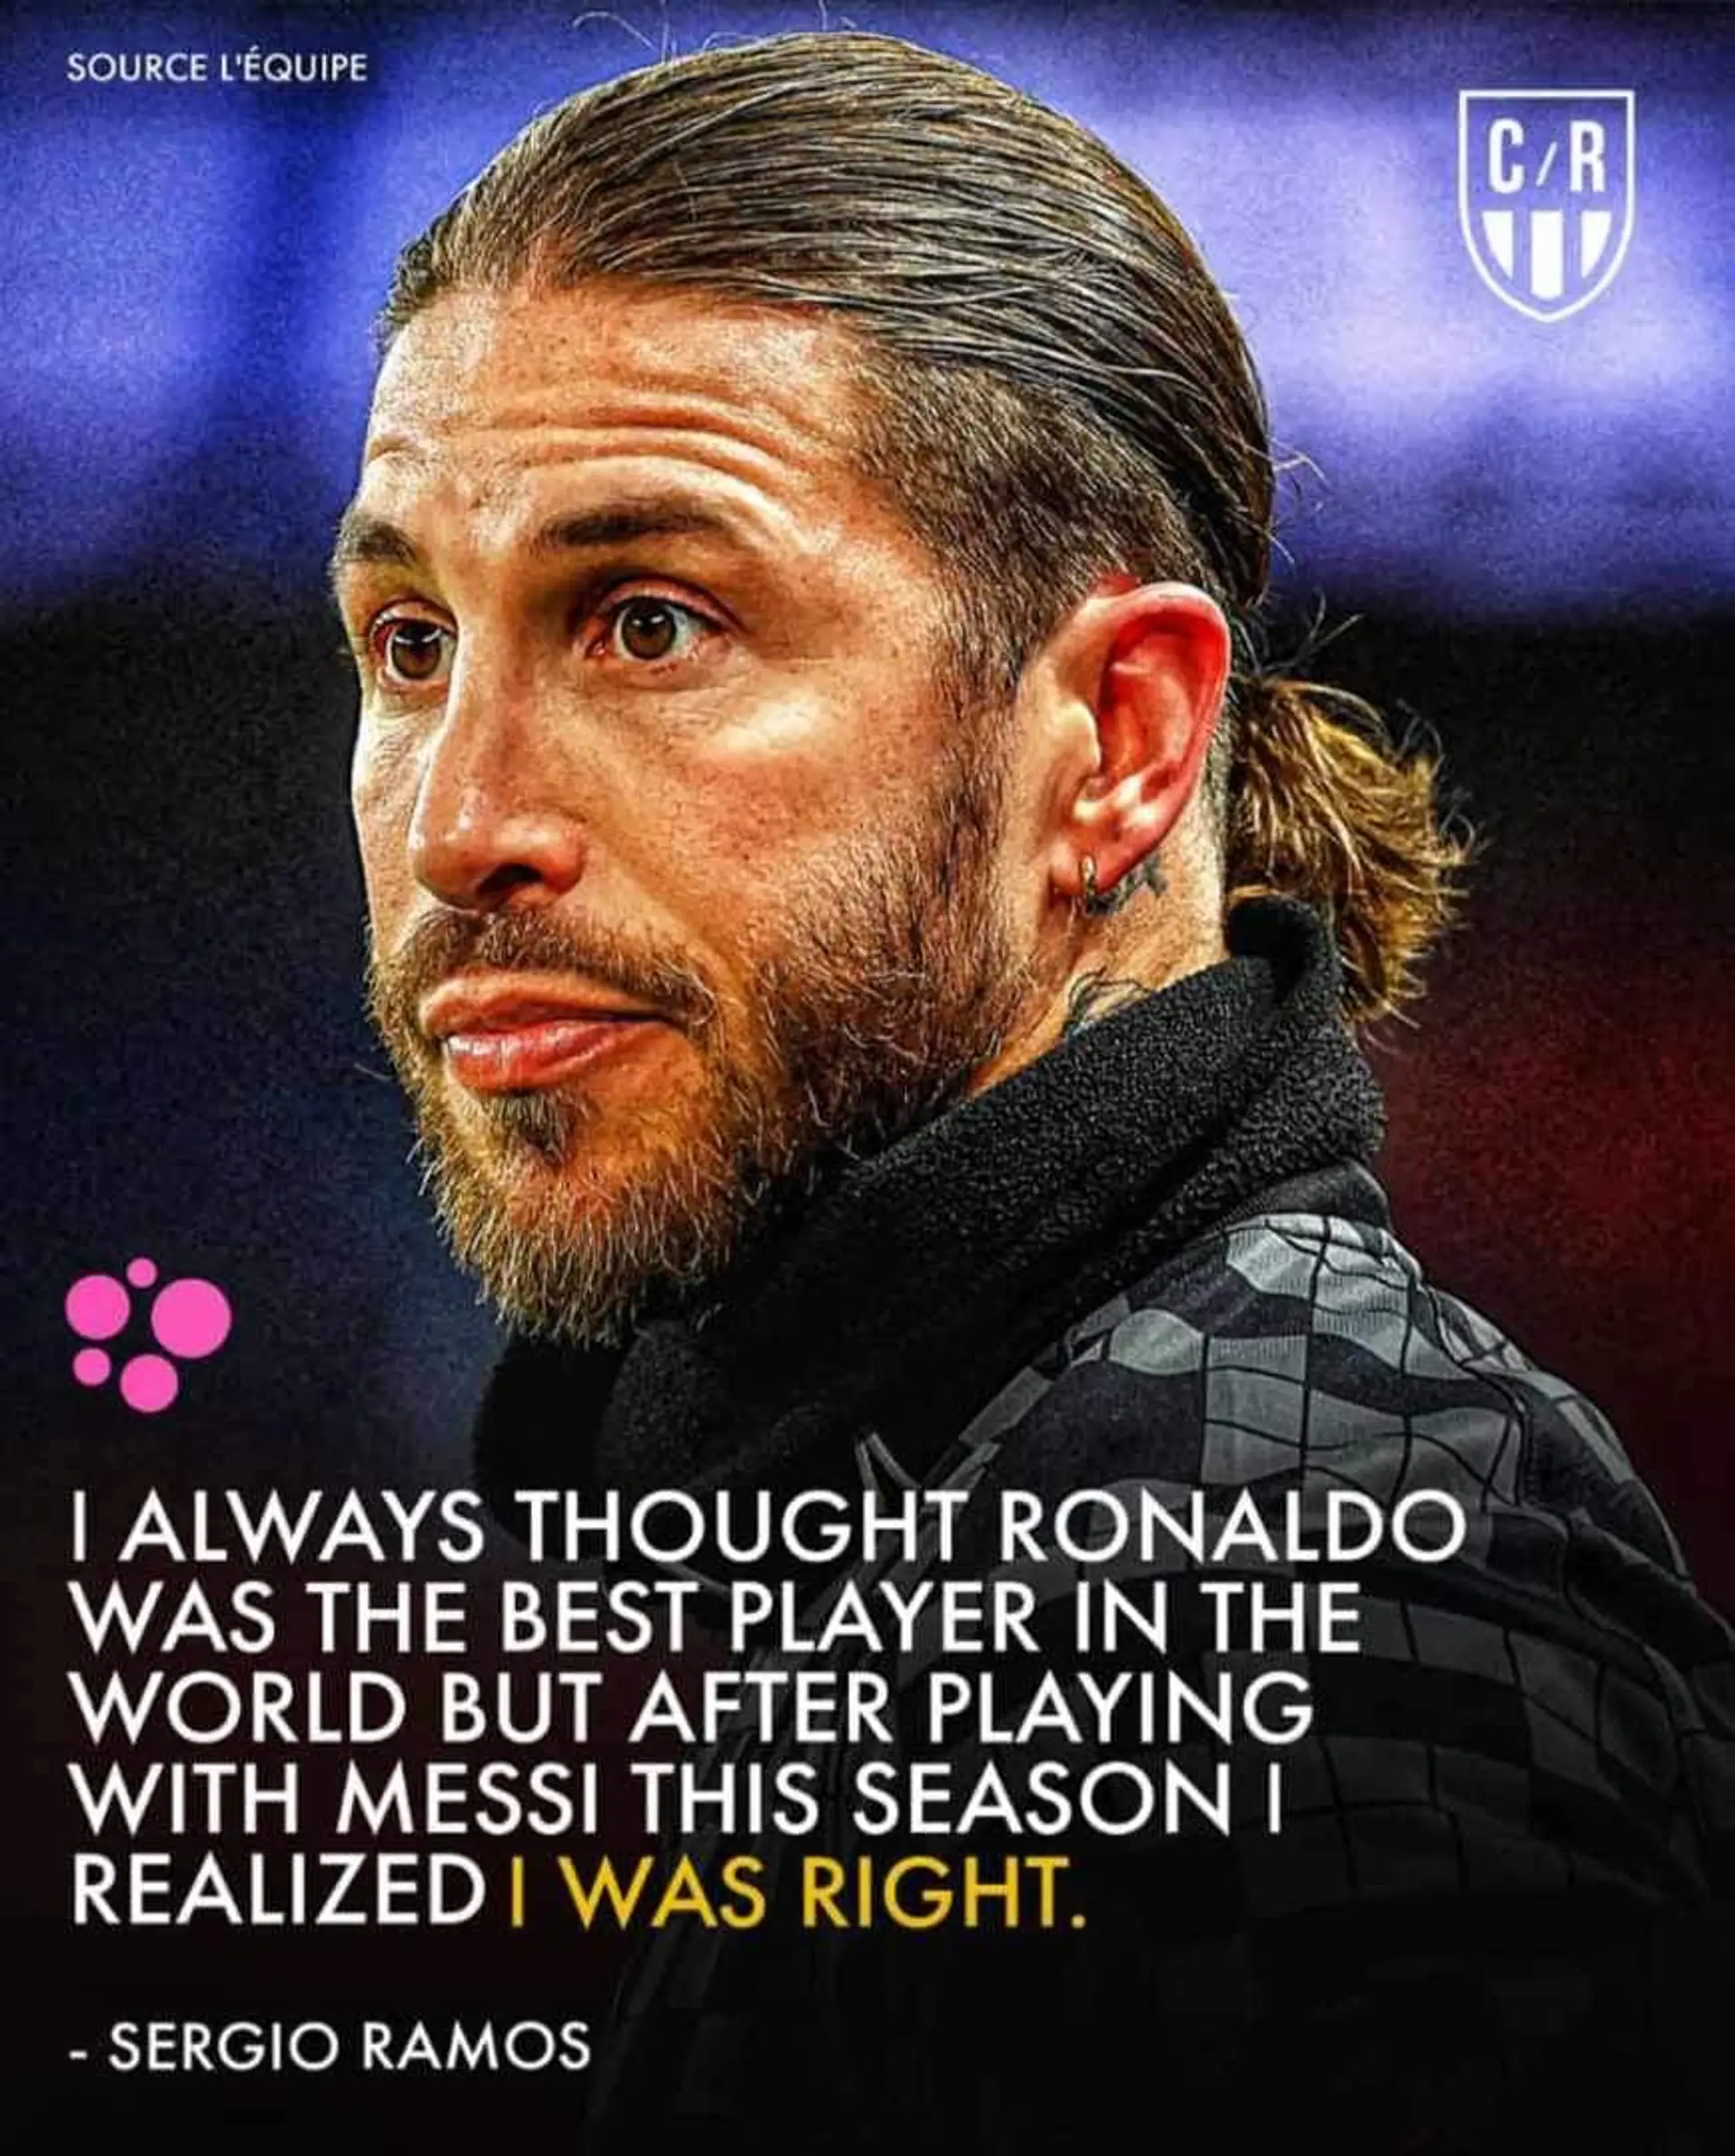 Ramos said this